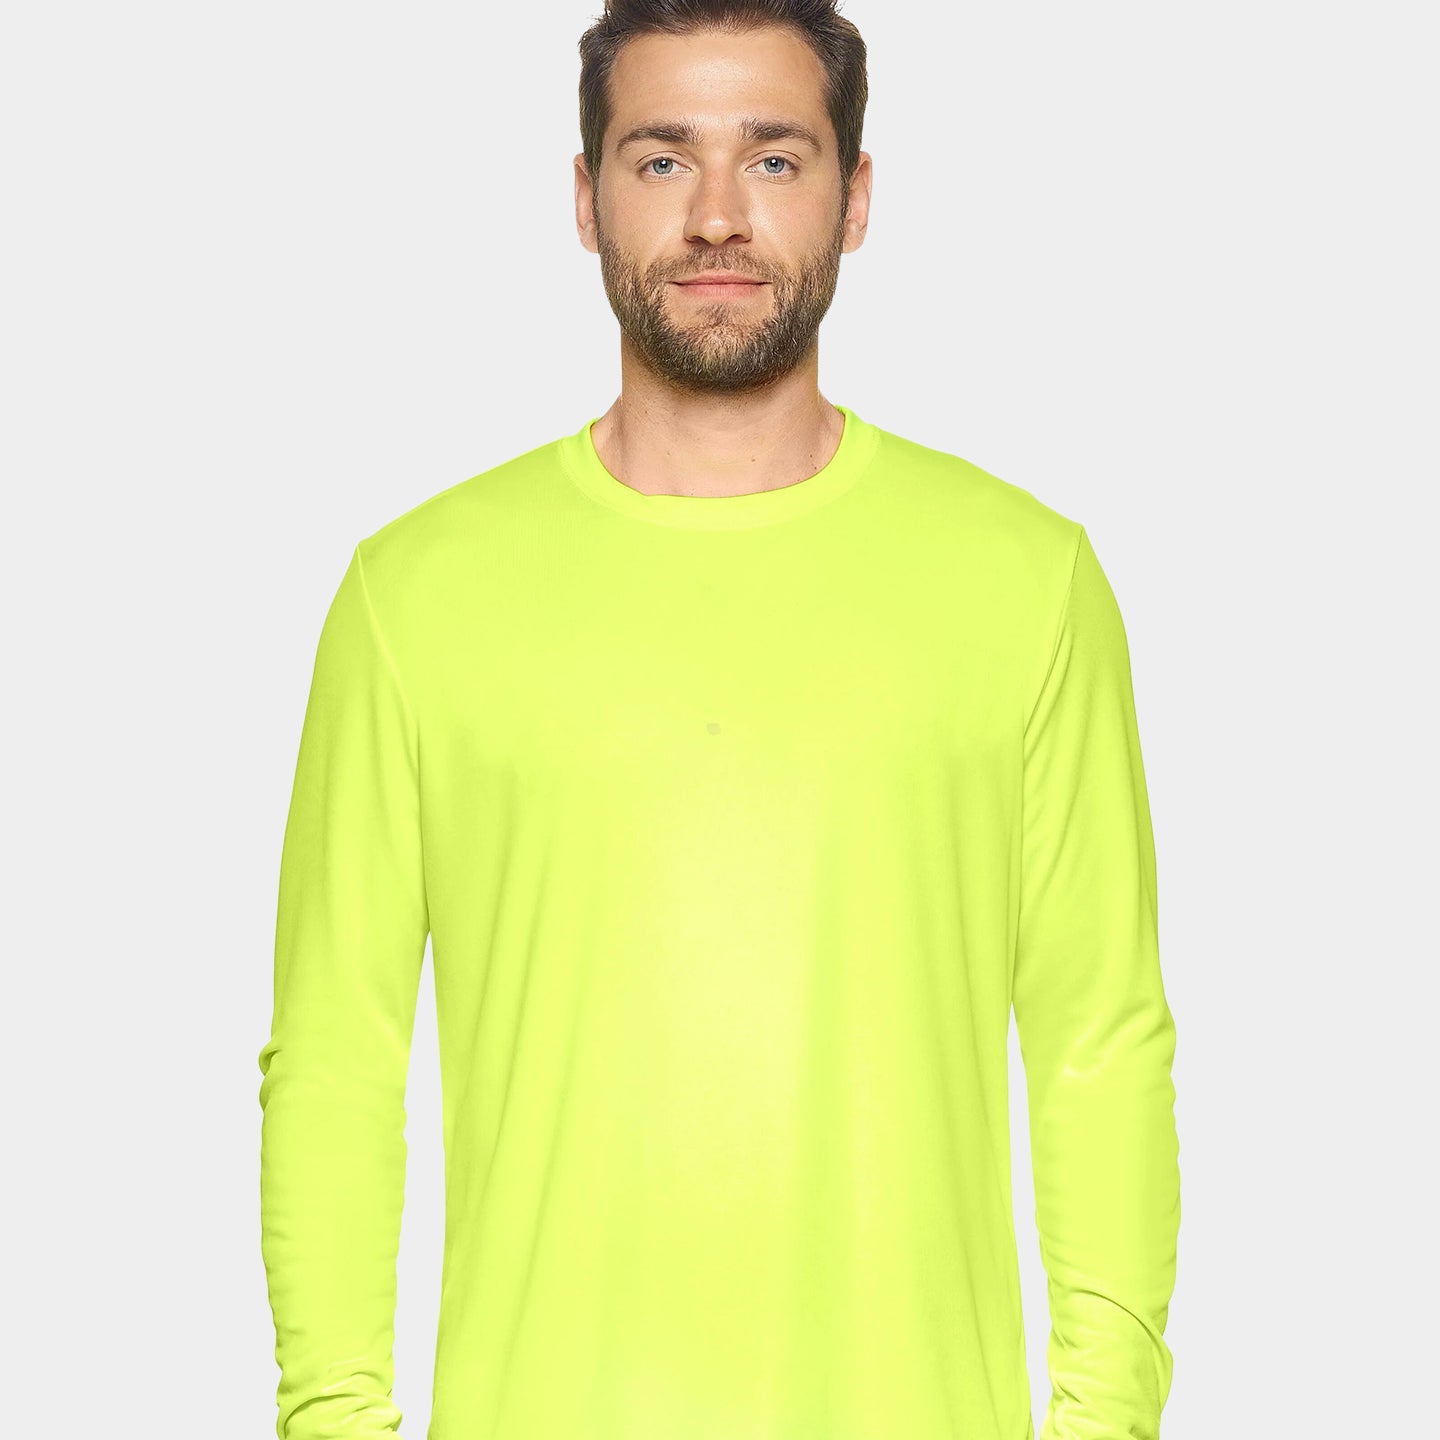 Expert Brand DriMax Men's Performance Long Sleeve Shirt, XL, Safety Yellow A1